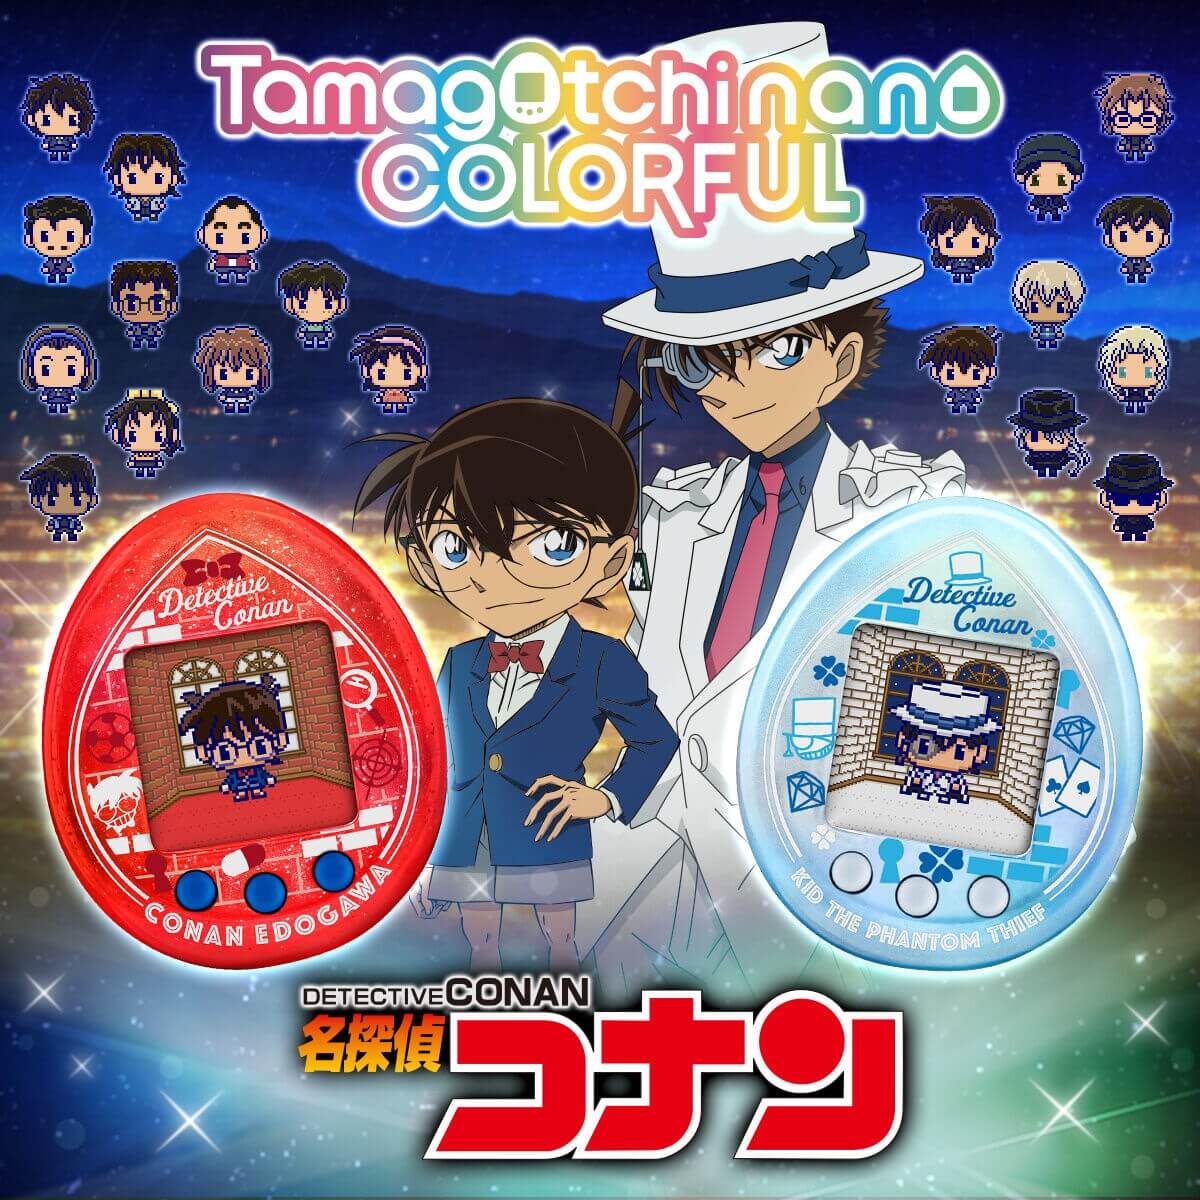 名探偵コナンのたまごっち「Tamagotchi nano colorful 名探偵コナン」を予約・購入する方法